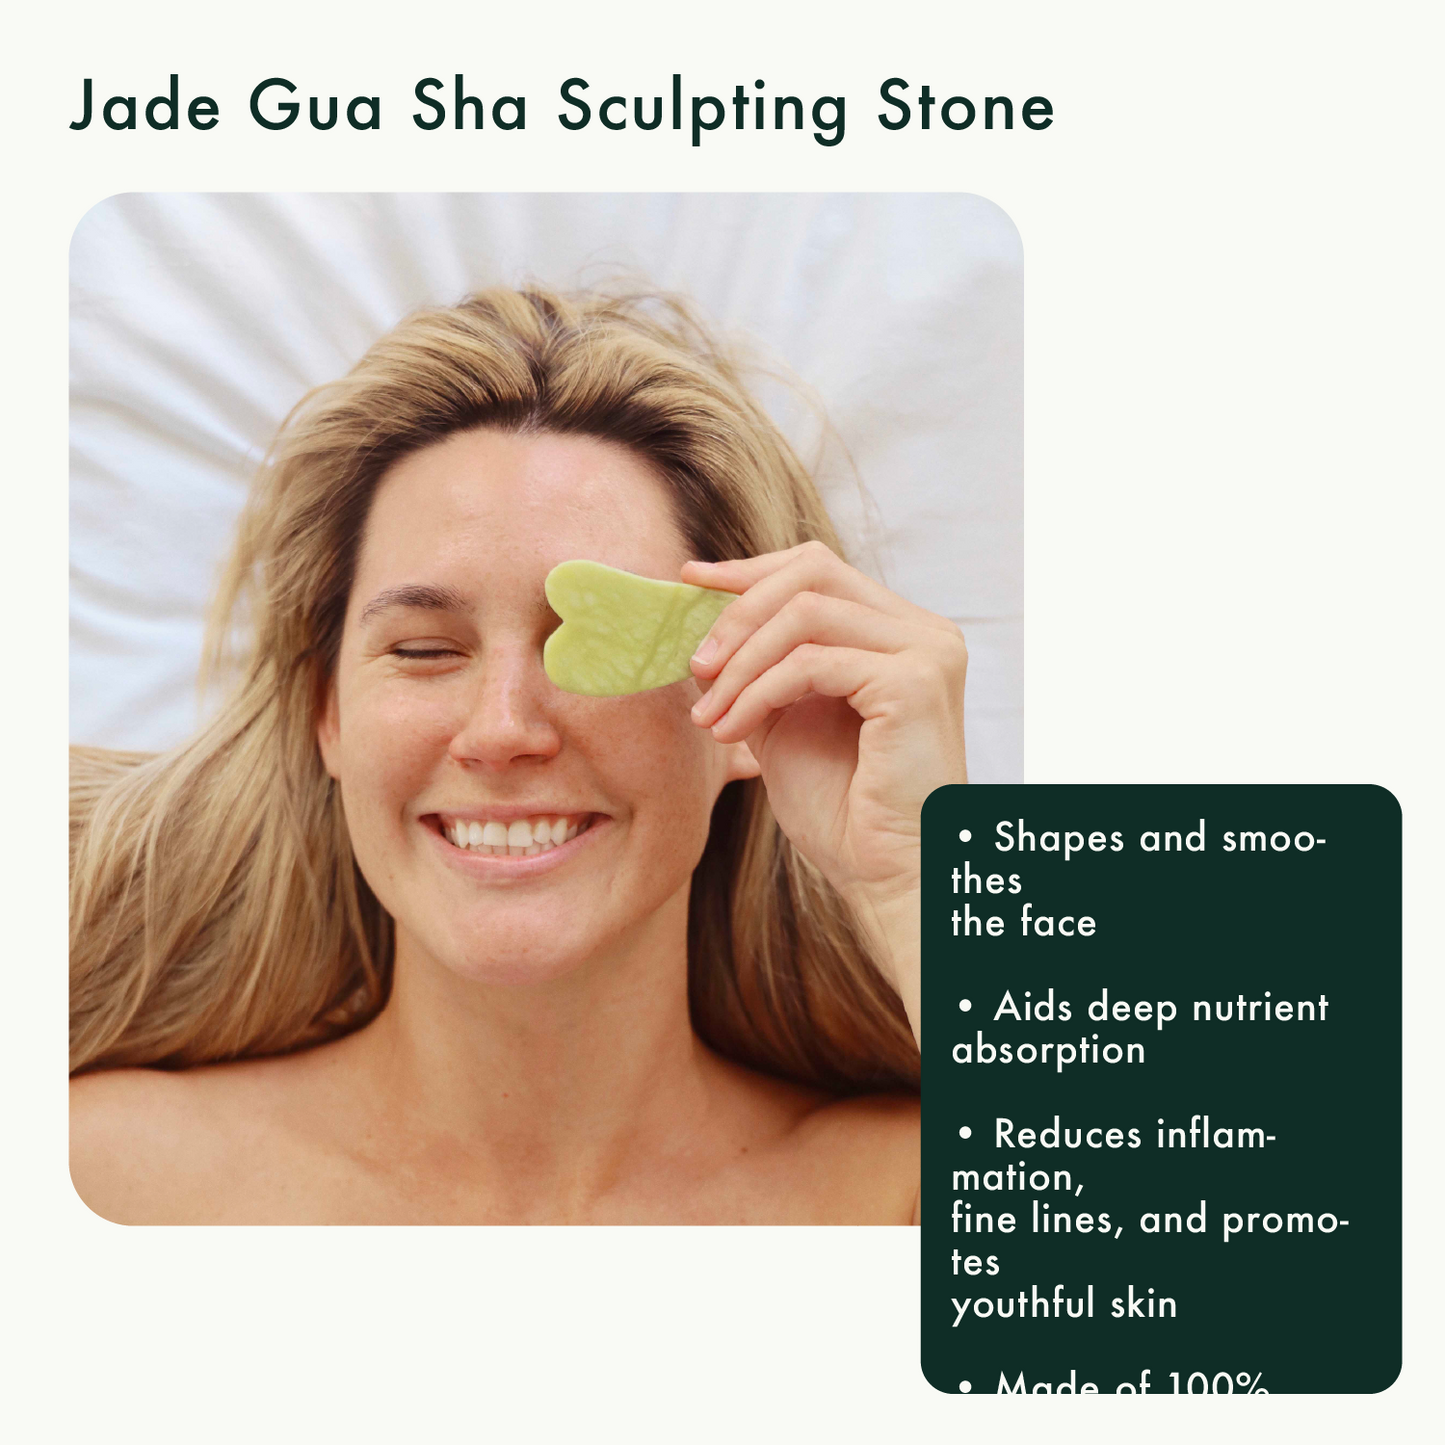 Jade Gua Sha Sculpting Stone